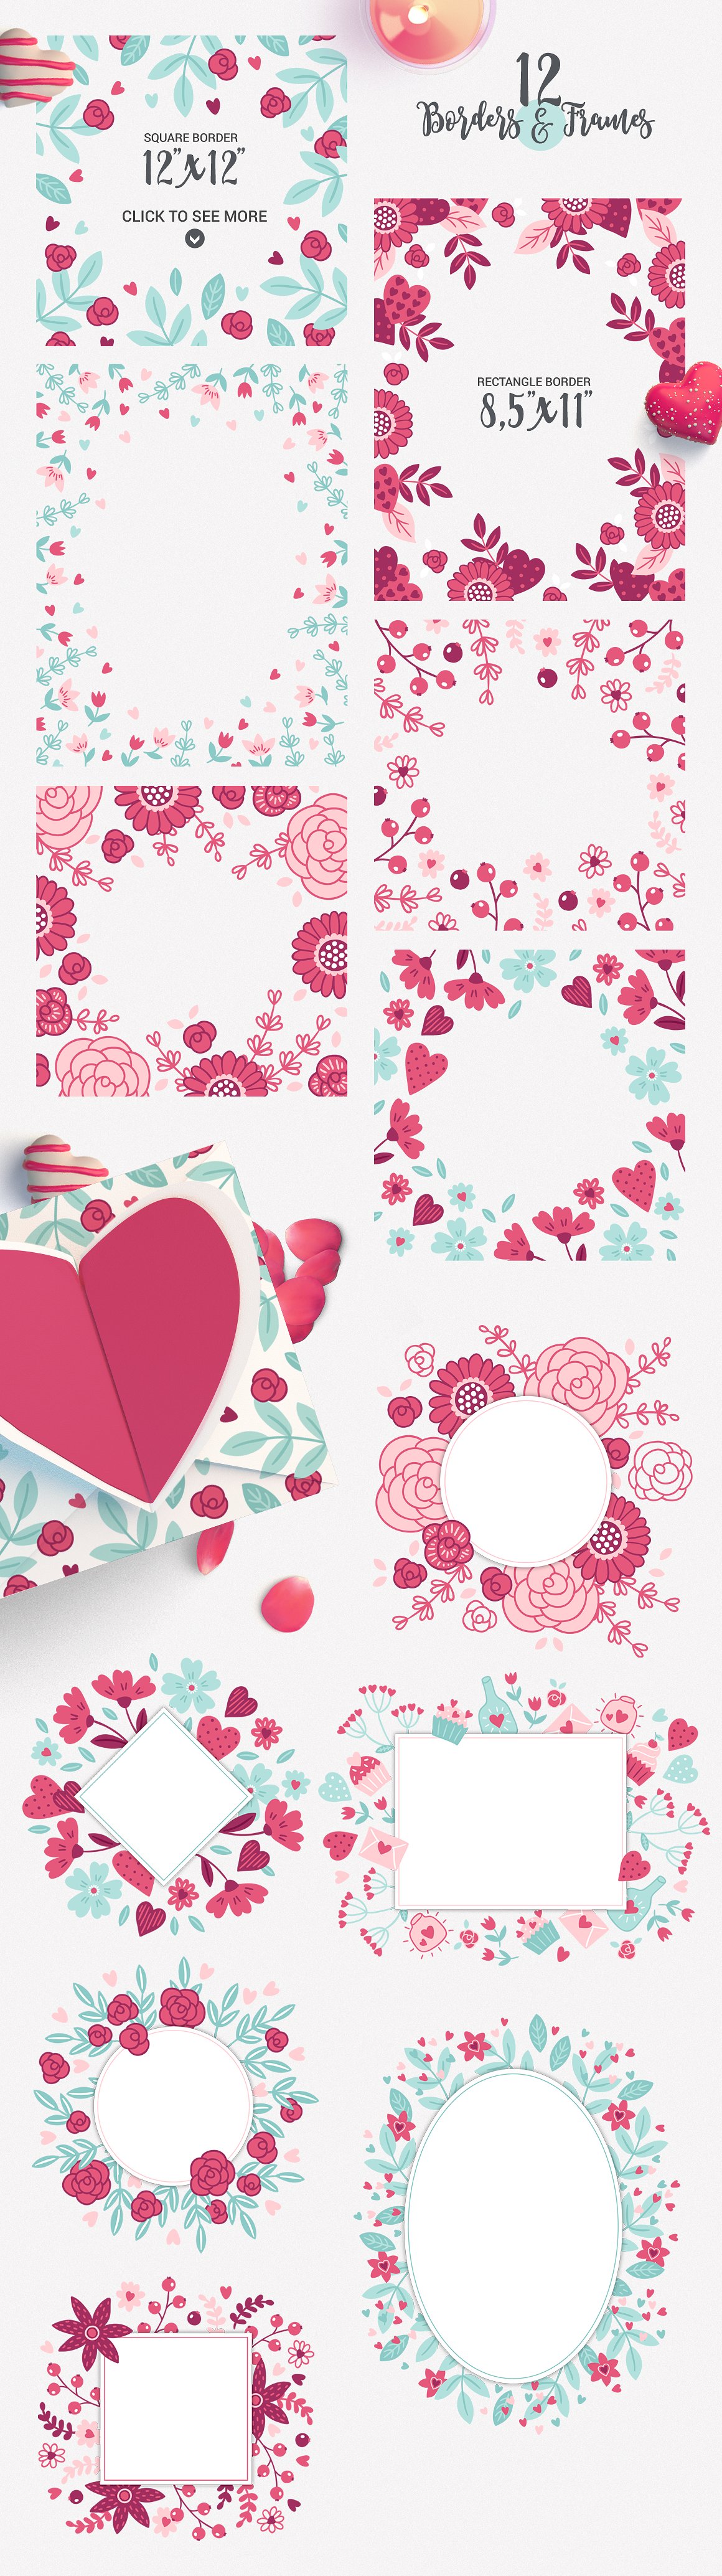 可爱的爱情（情人节）矢量素材包下载插图(3)